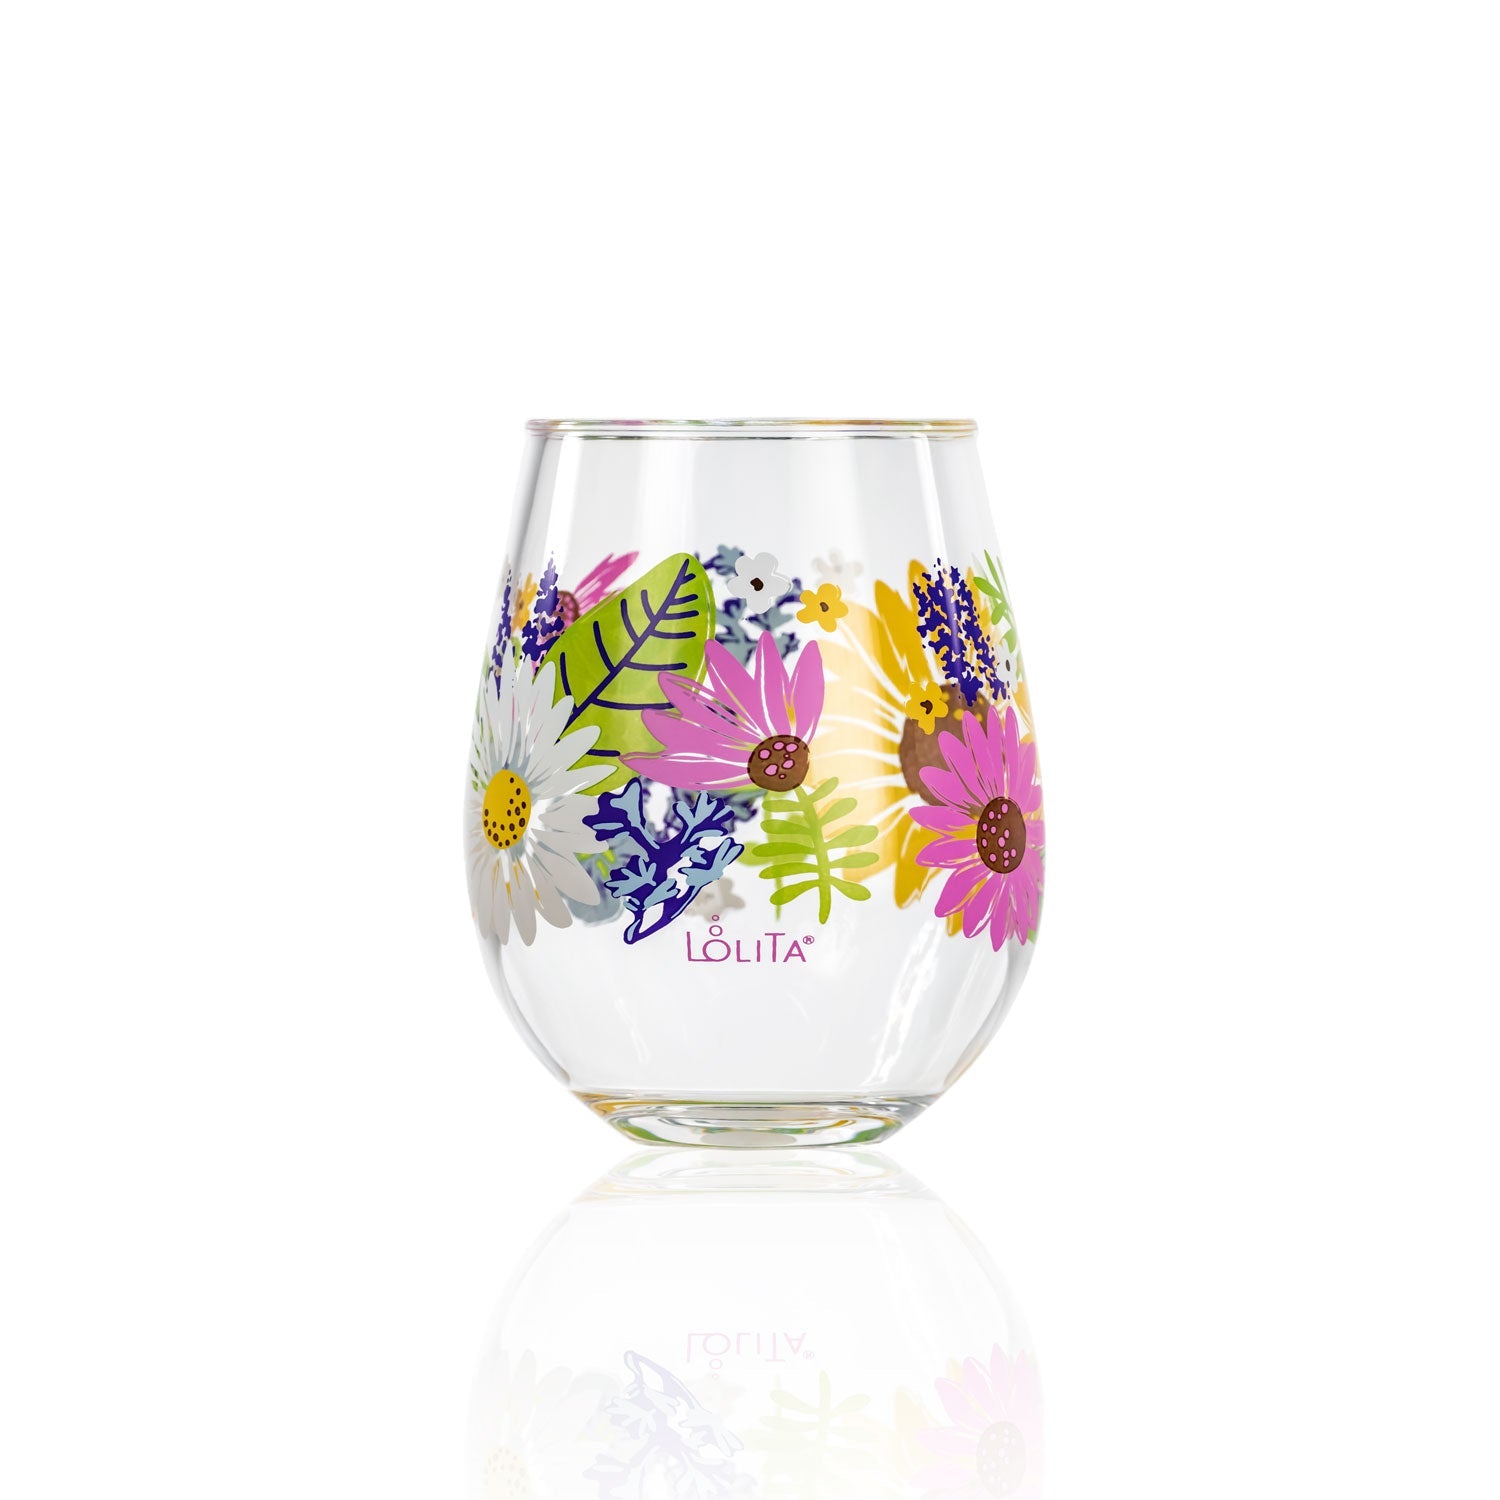 Lolita Wild Flower Party to go 15oz Acrylic Stemless Wine Glass